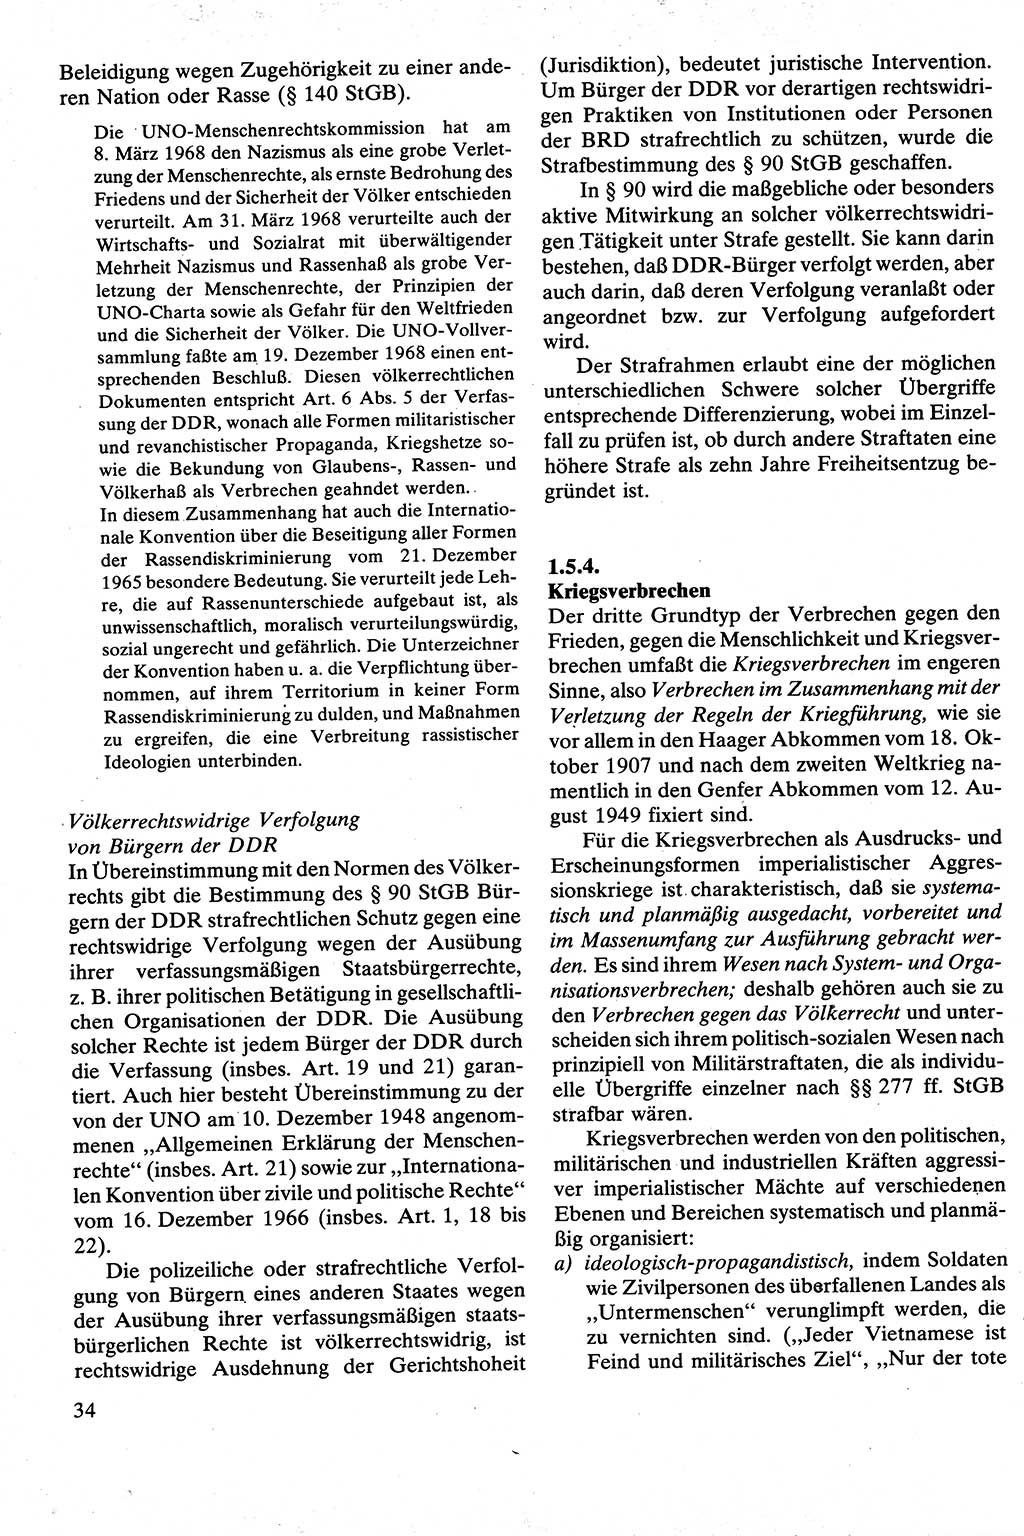 Strafrecht [Deutsche Demokratische Republik (DDR)], Besonderer Teil, Lehrbuch 1981, Seite 34 (Strafr. DDR BT Lb. 1981, S. 34)